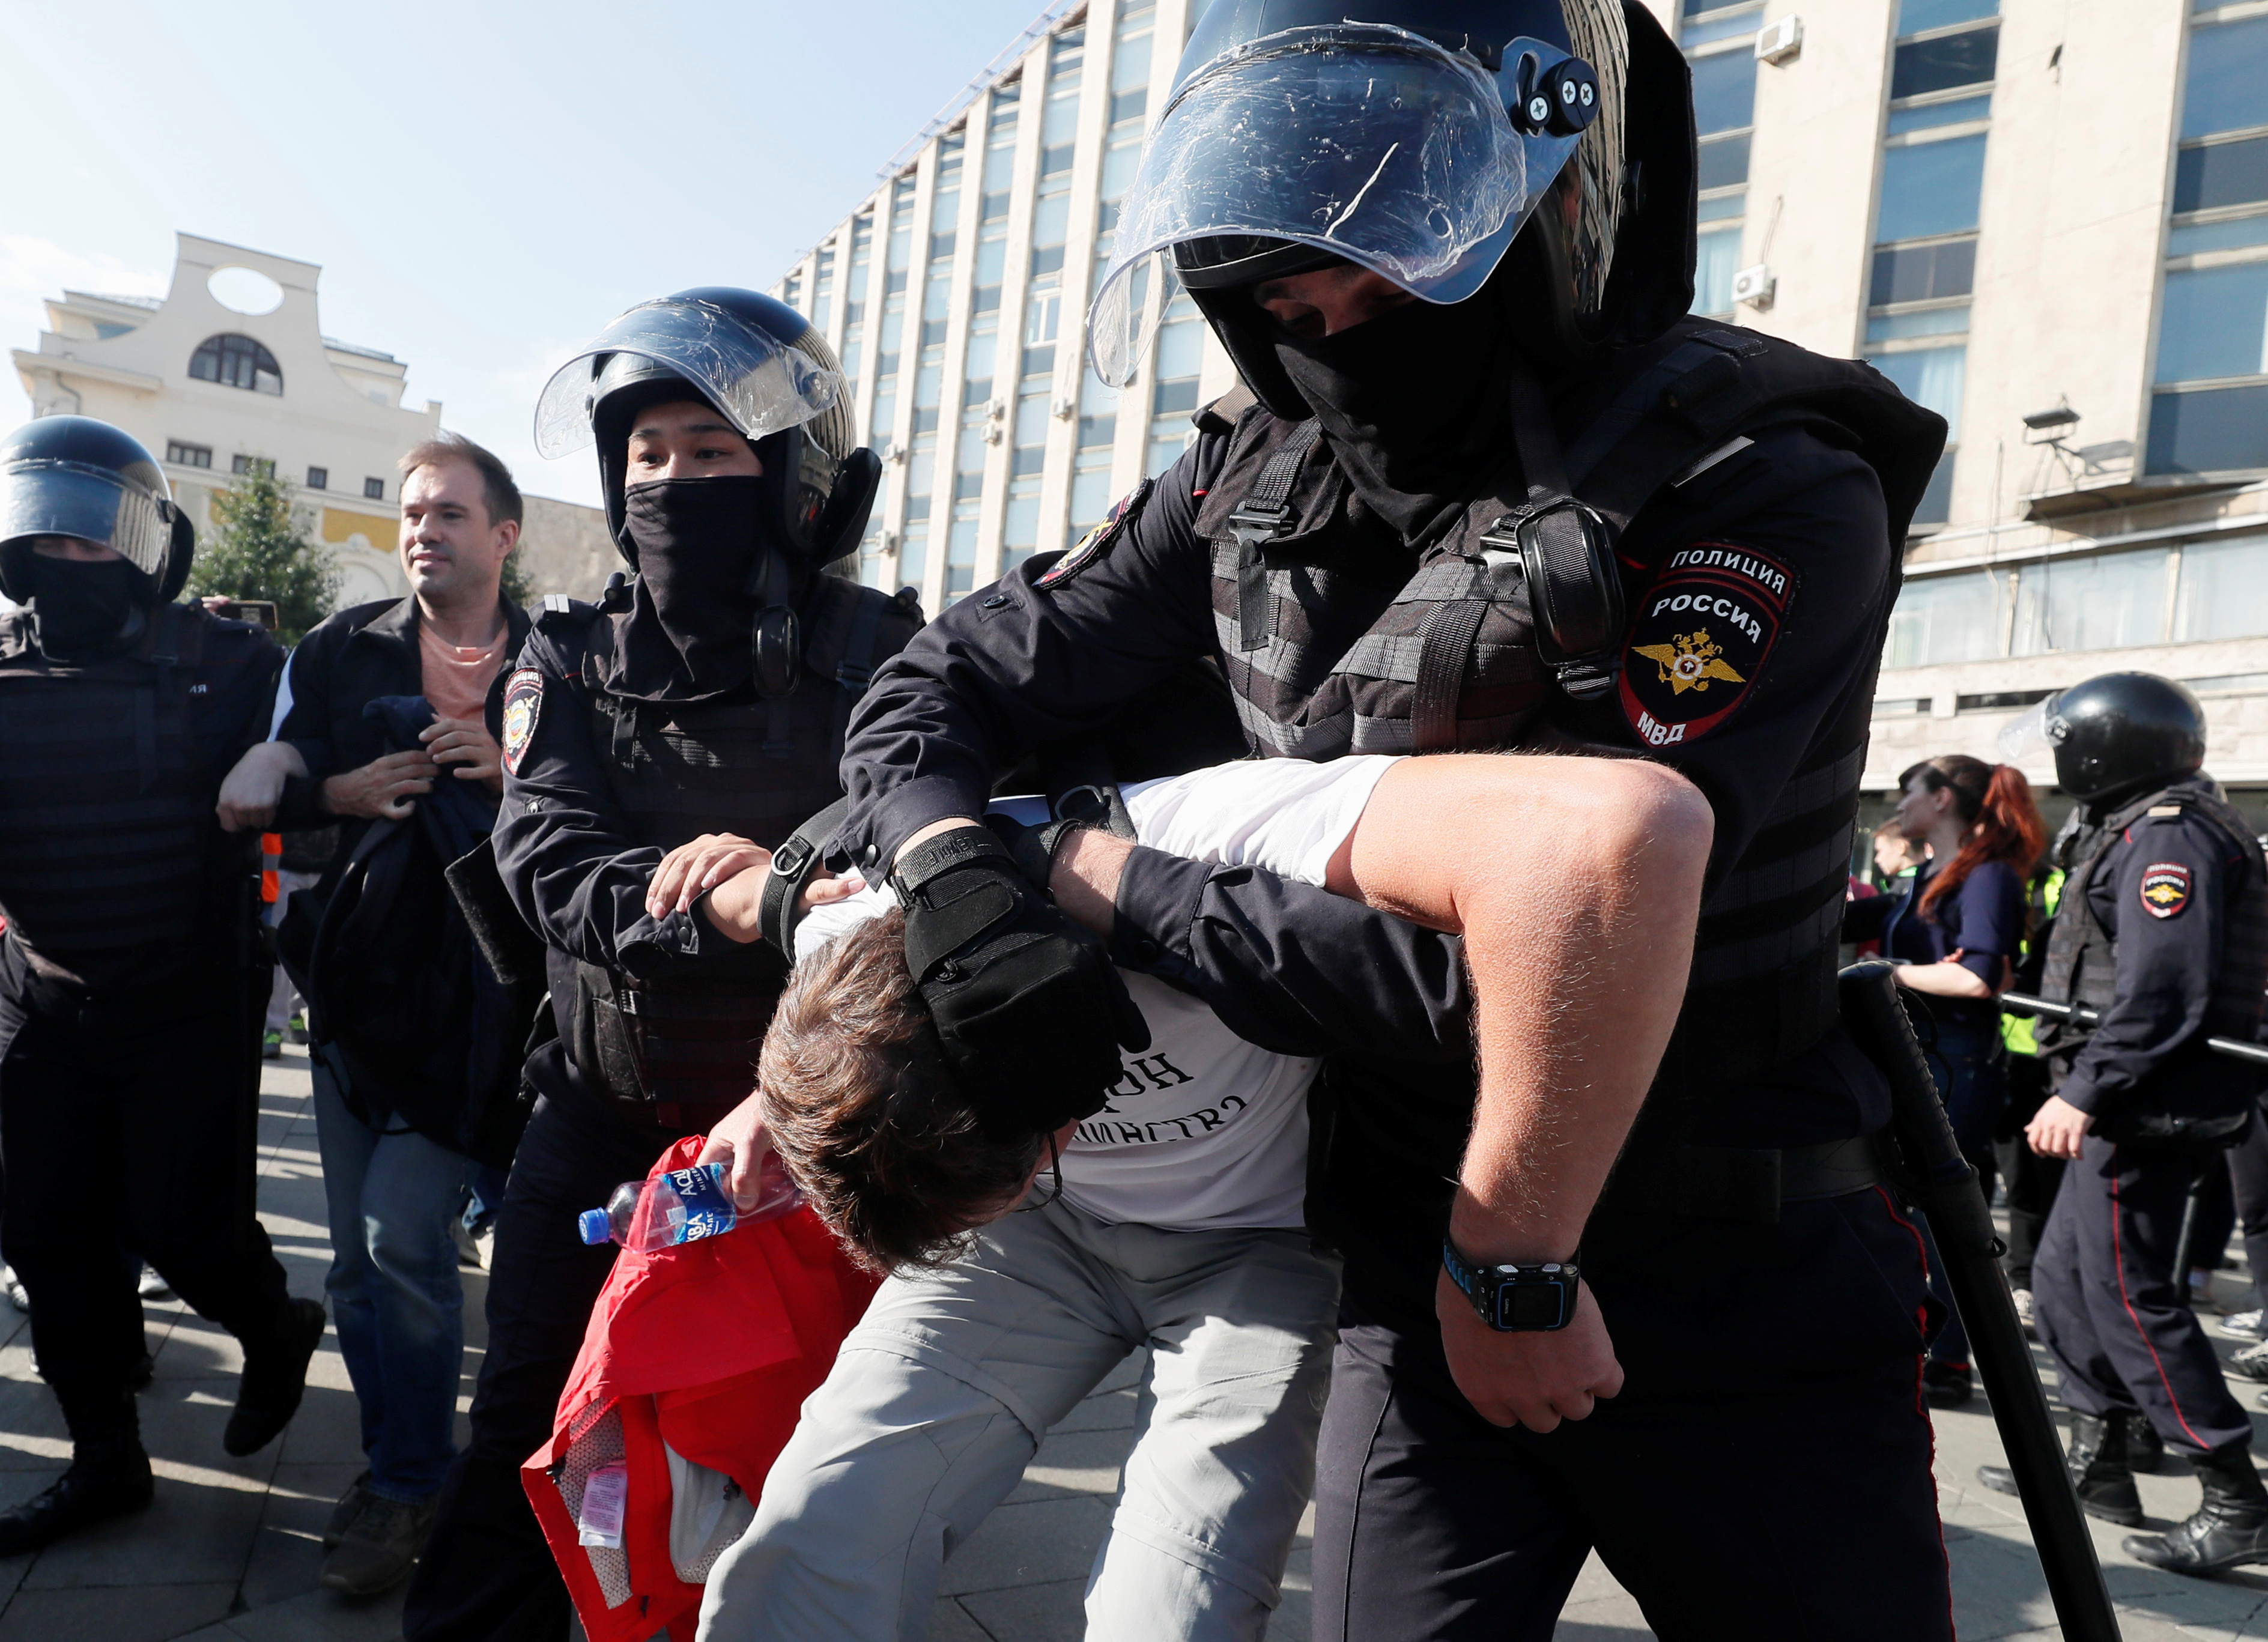 Se eleva a 300 el número de detenidos por el régimen de Putin durante protestas opositoras en Rusia